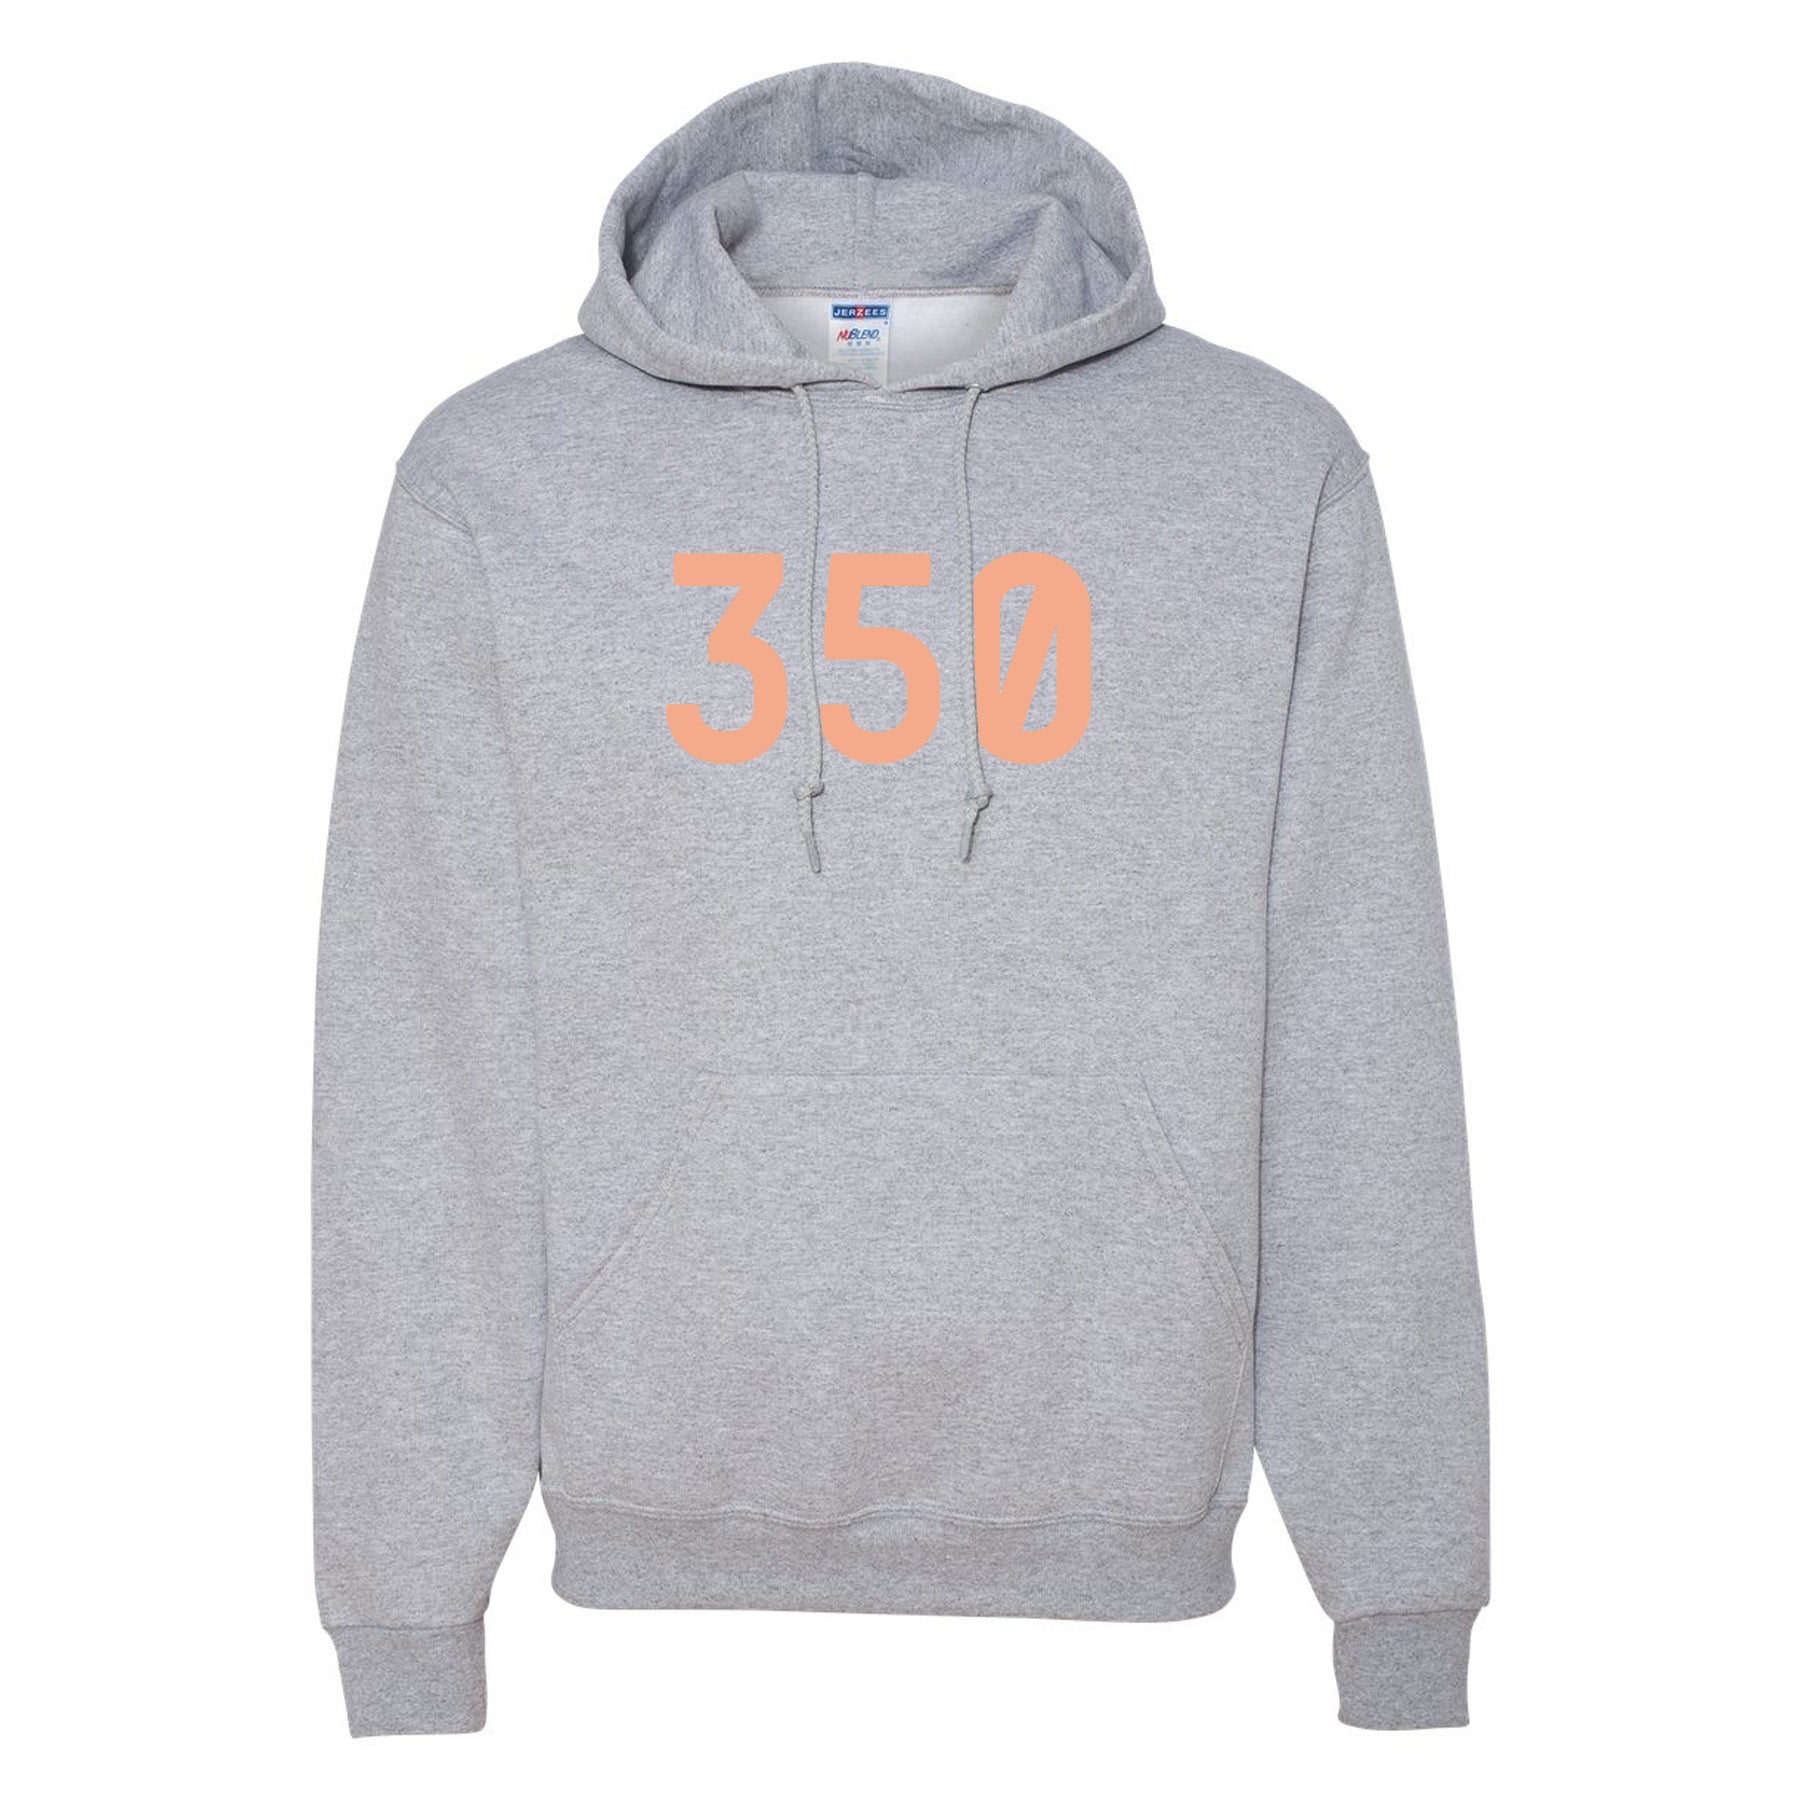 yeezy 350 hoodie